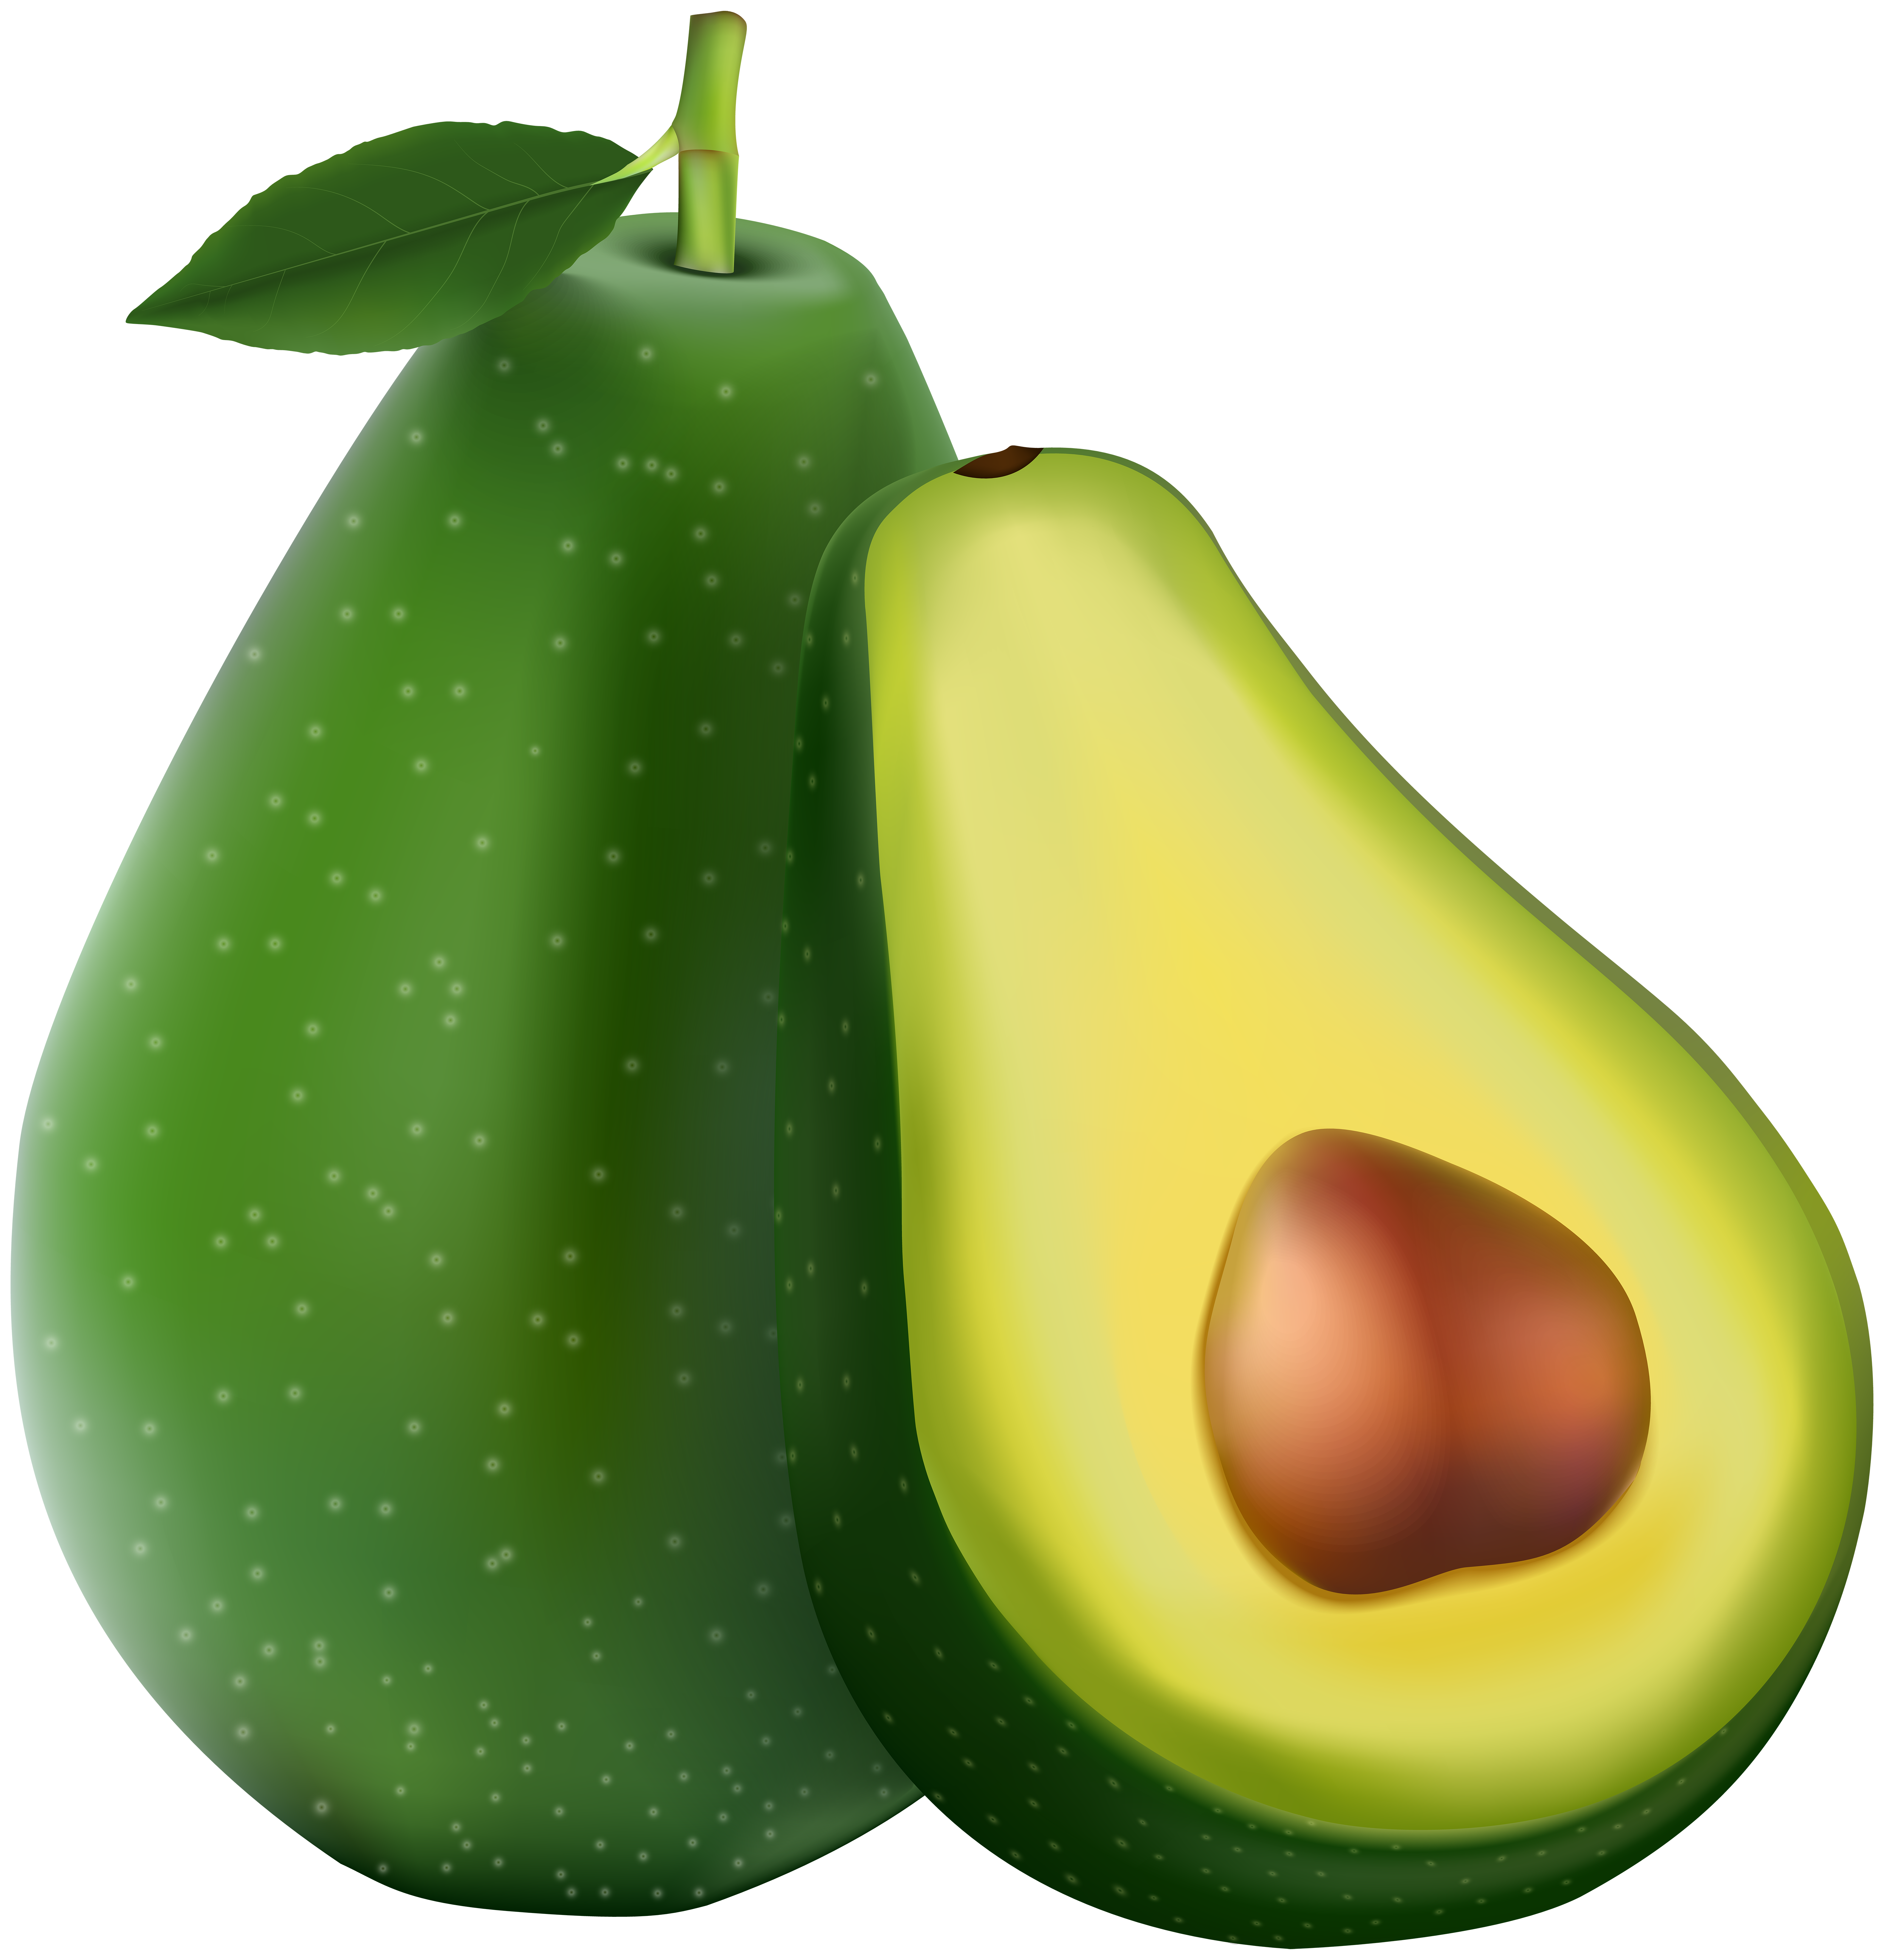 Avocado Transparent PNG Image.